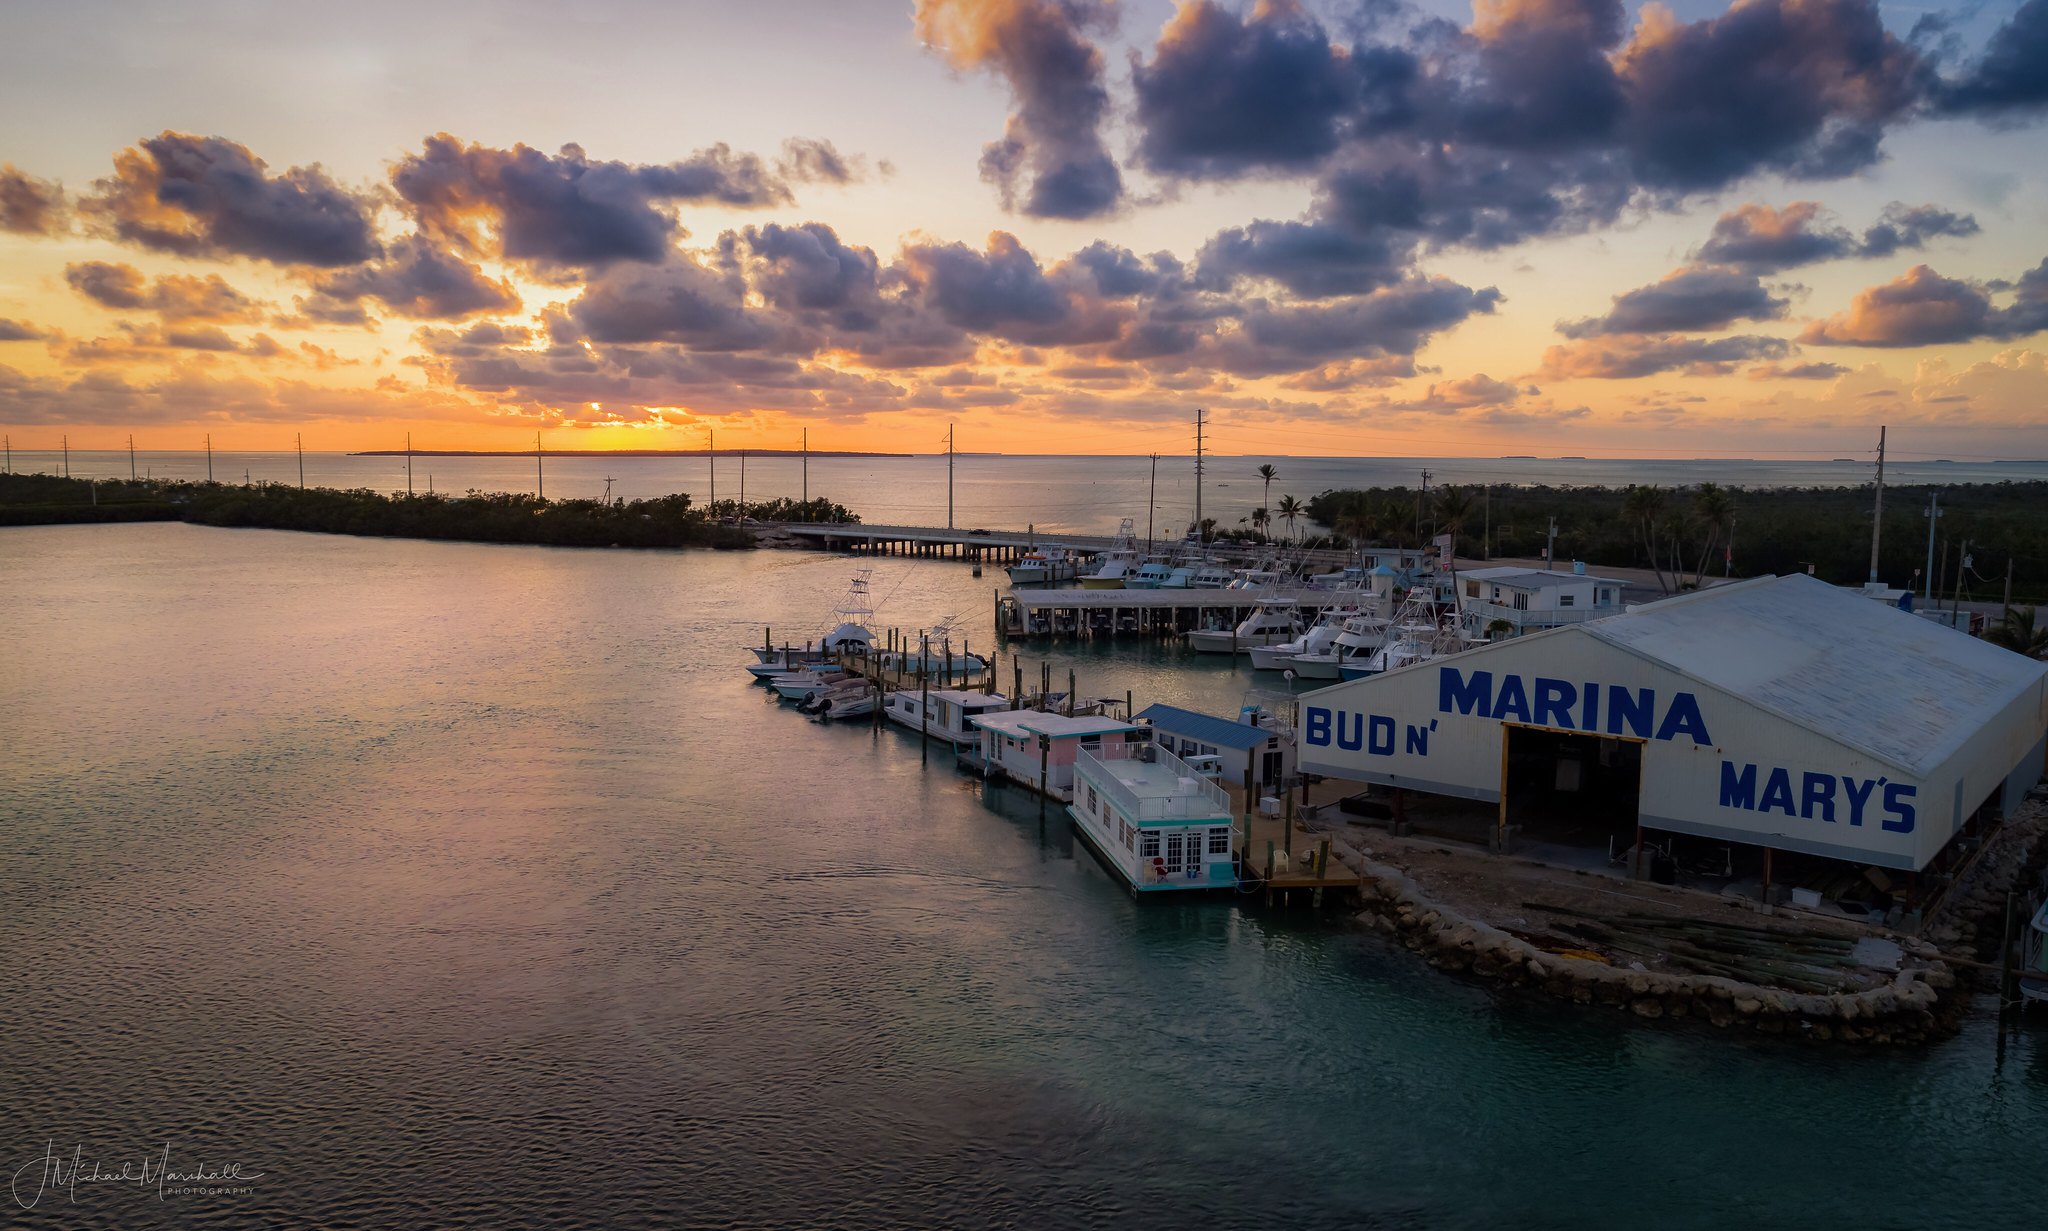 Islamorada, Florida Keys.